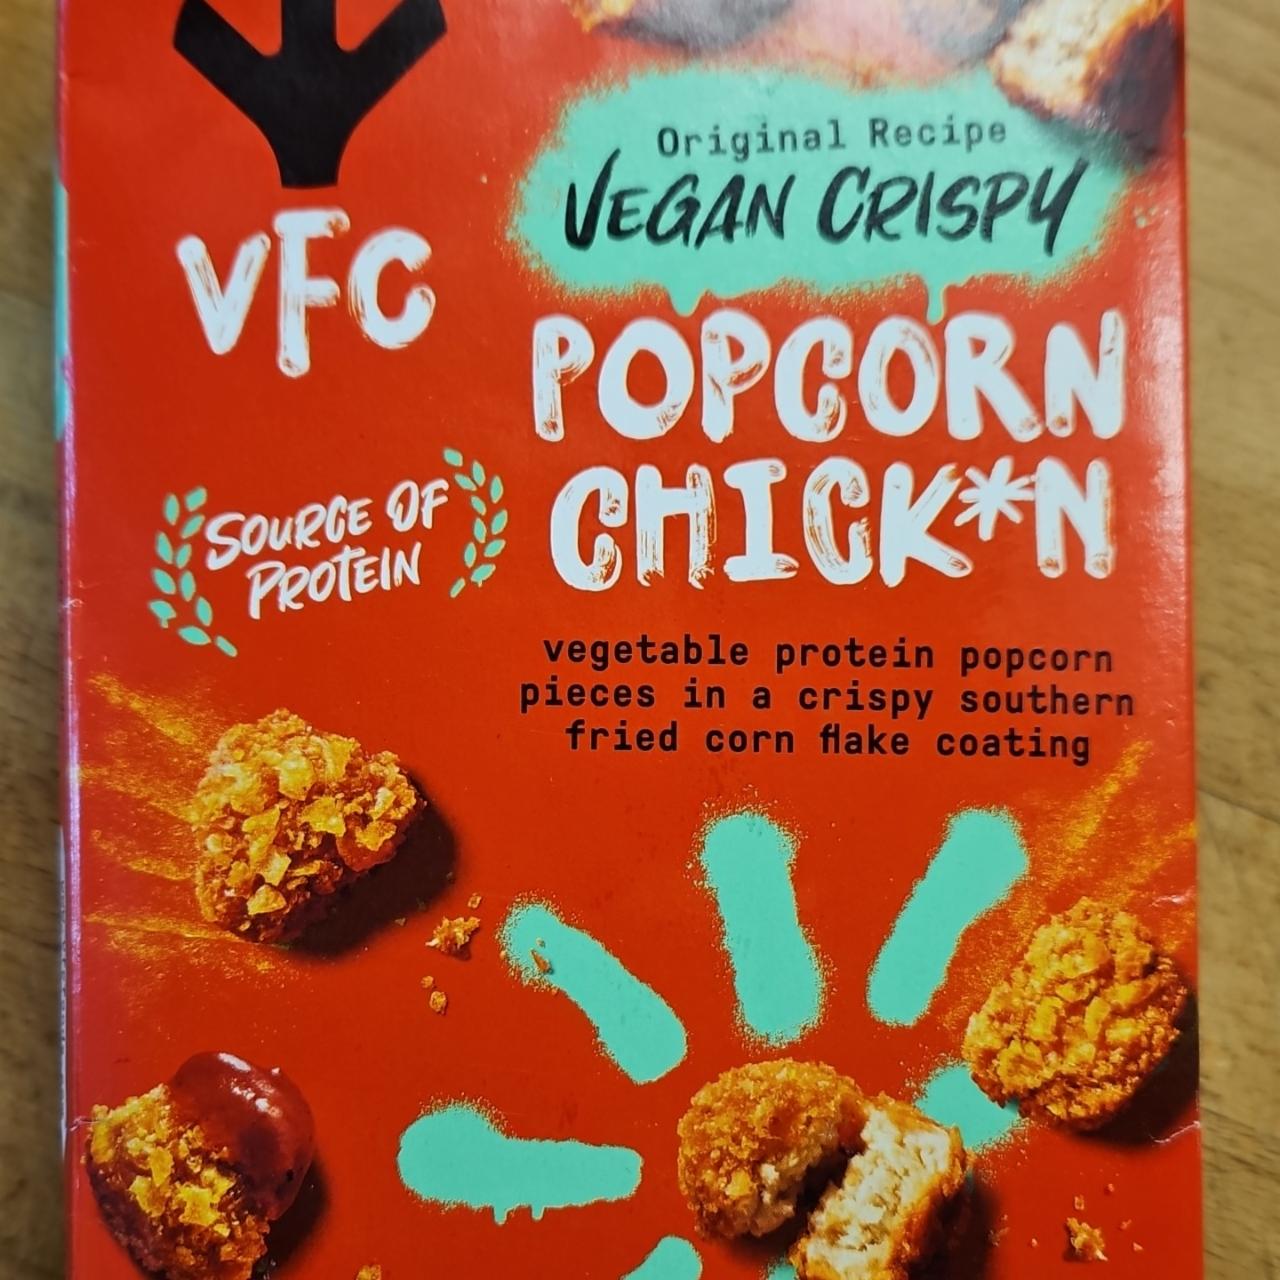 Fotografie - Original Recipe Vegan Crispy Popcorn Chick*n VFC